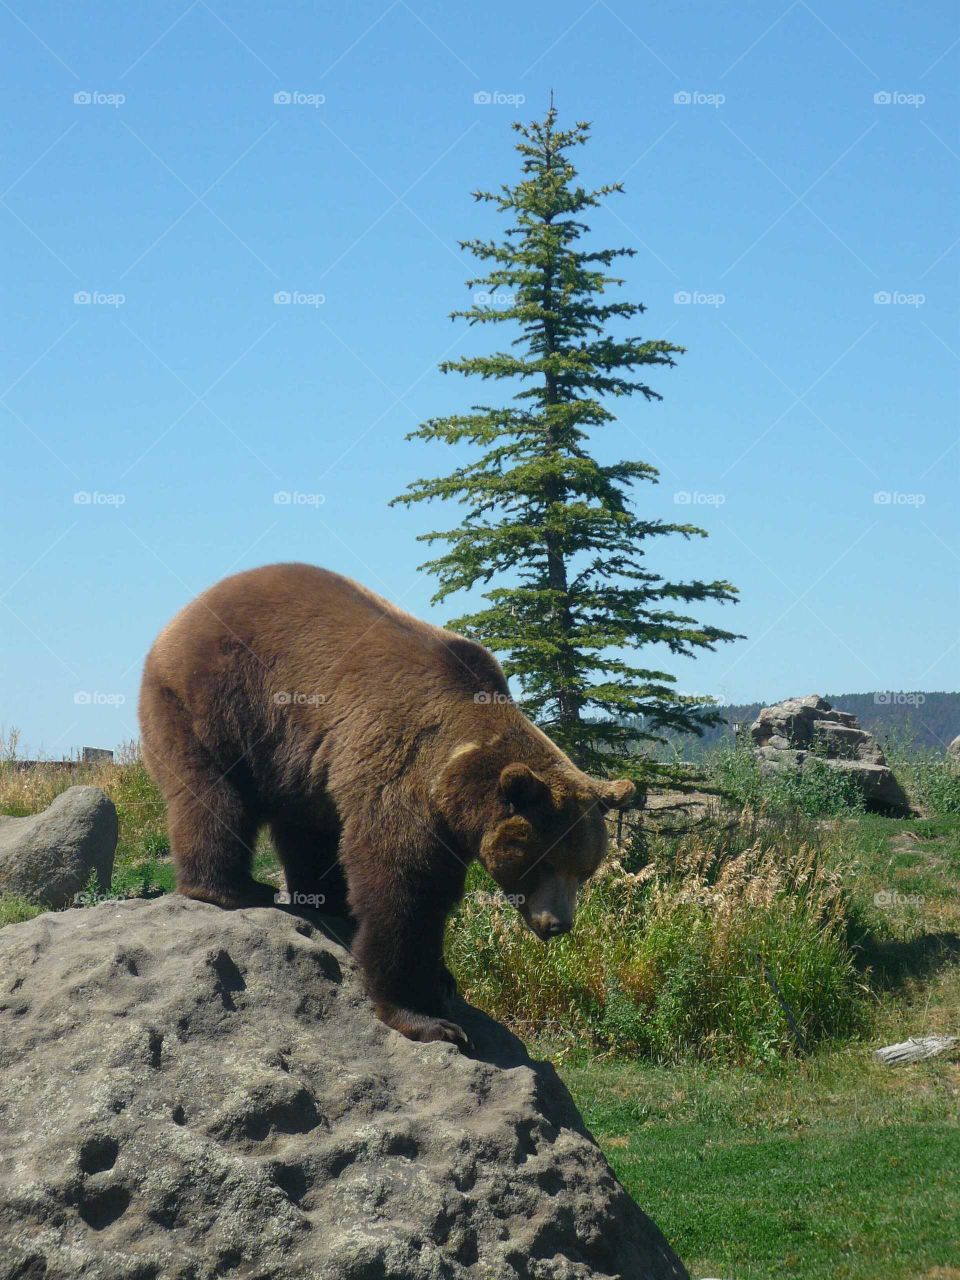 Bear on a rock